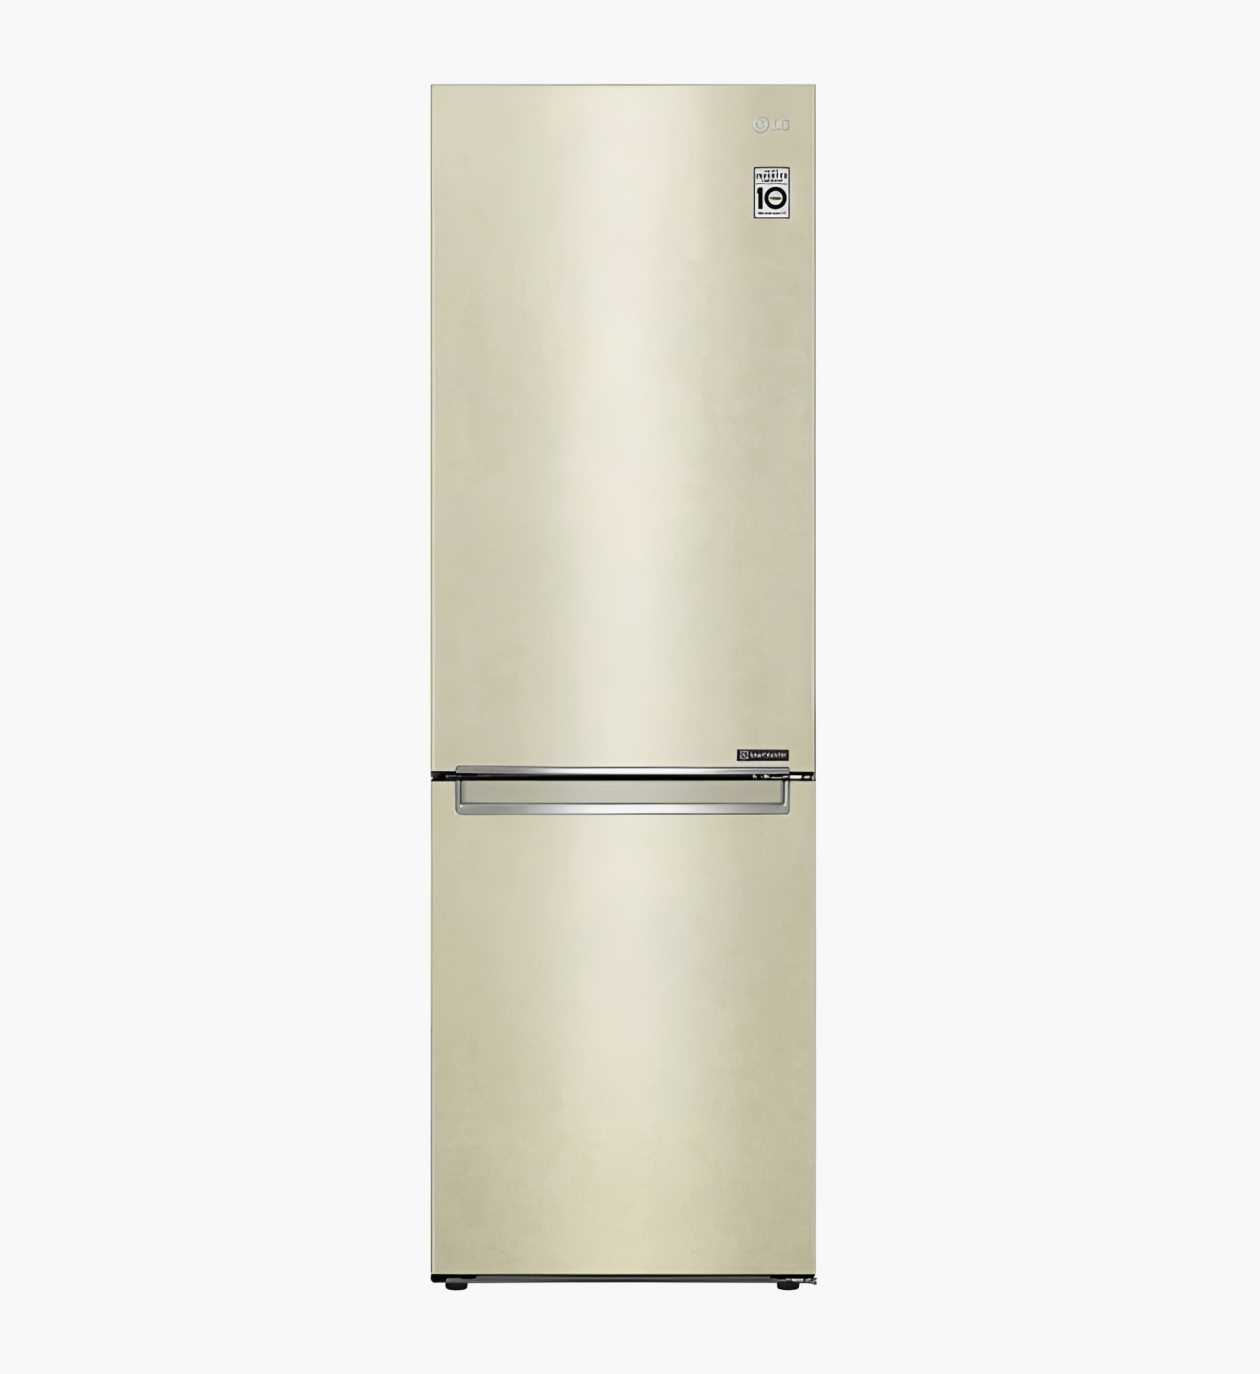 Сравнение характеристик современных холодильников с No Frost